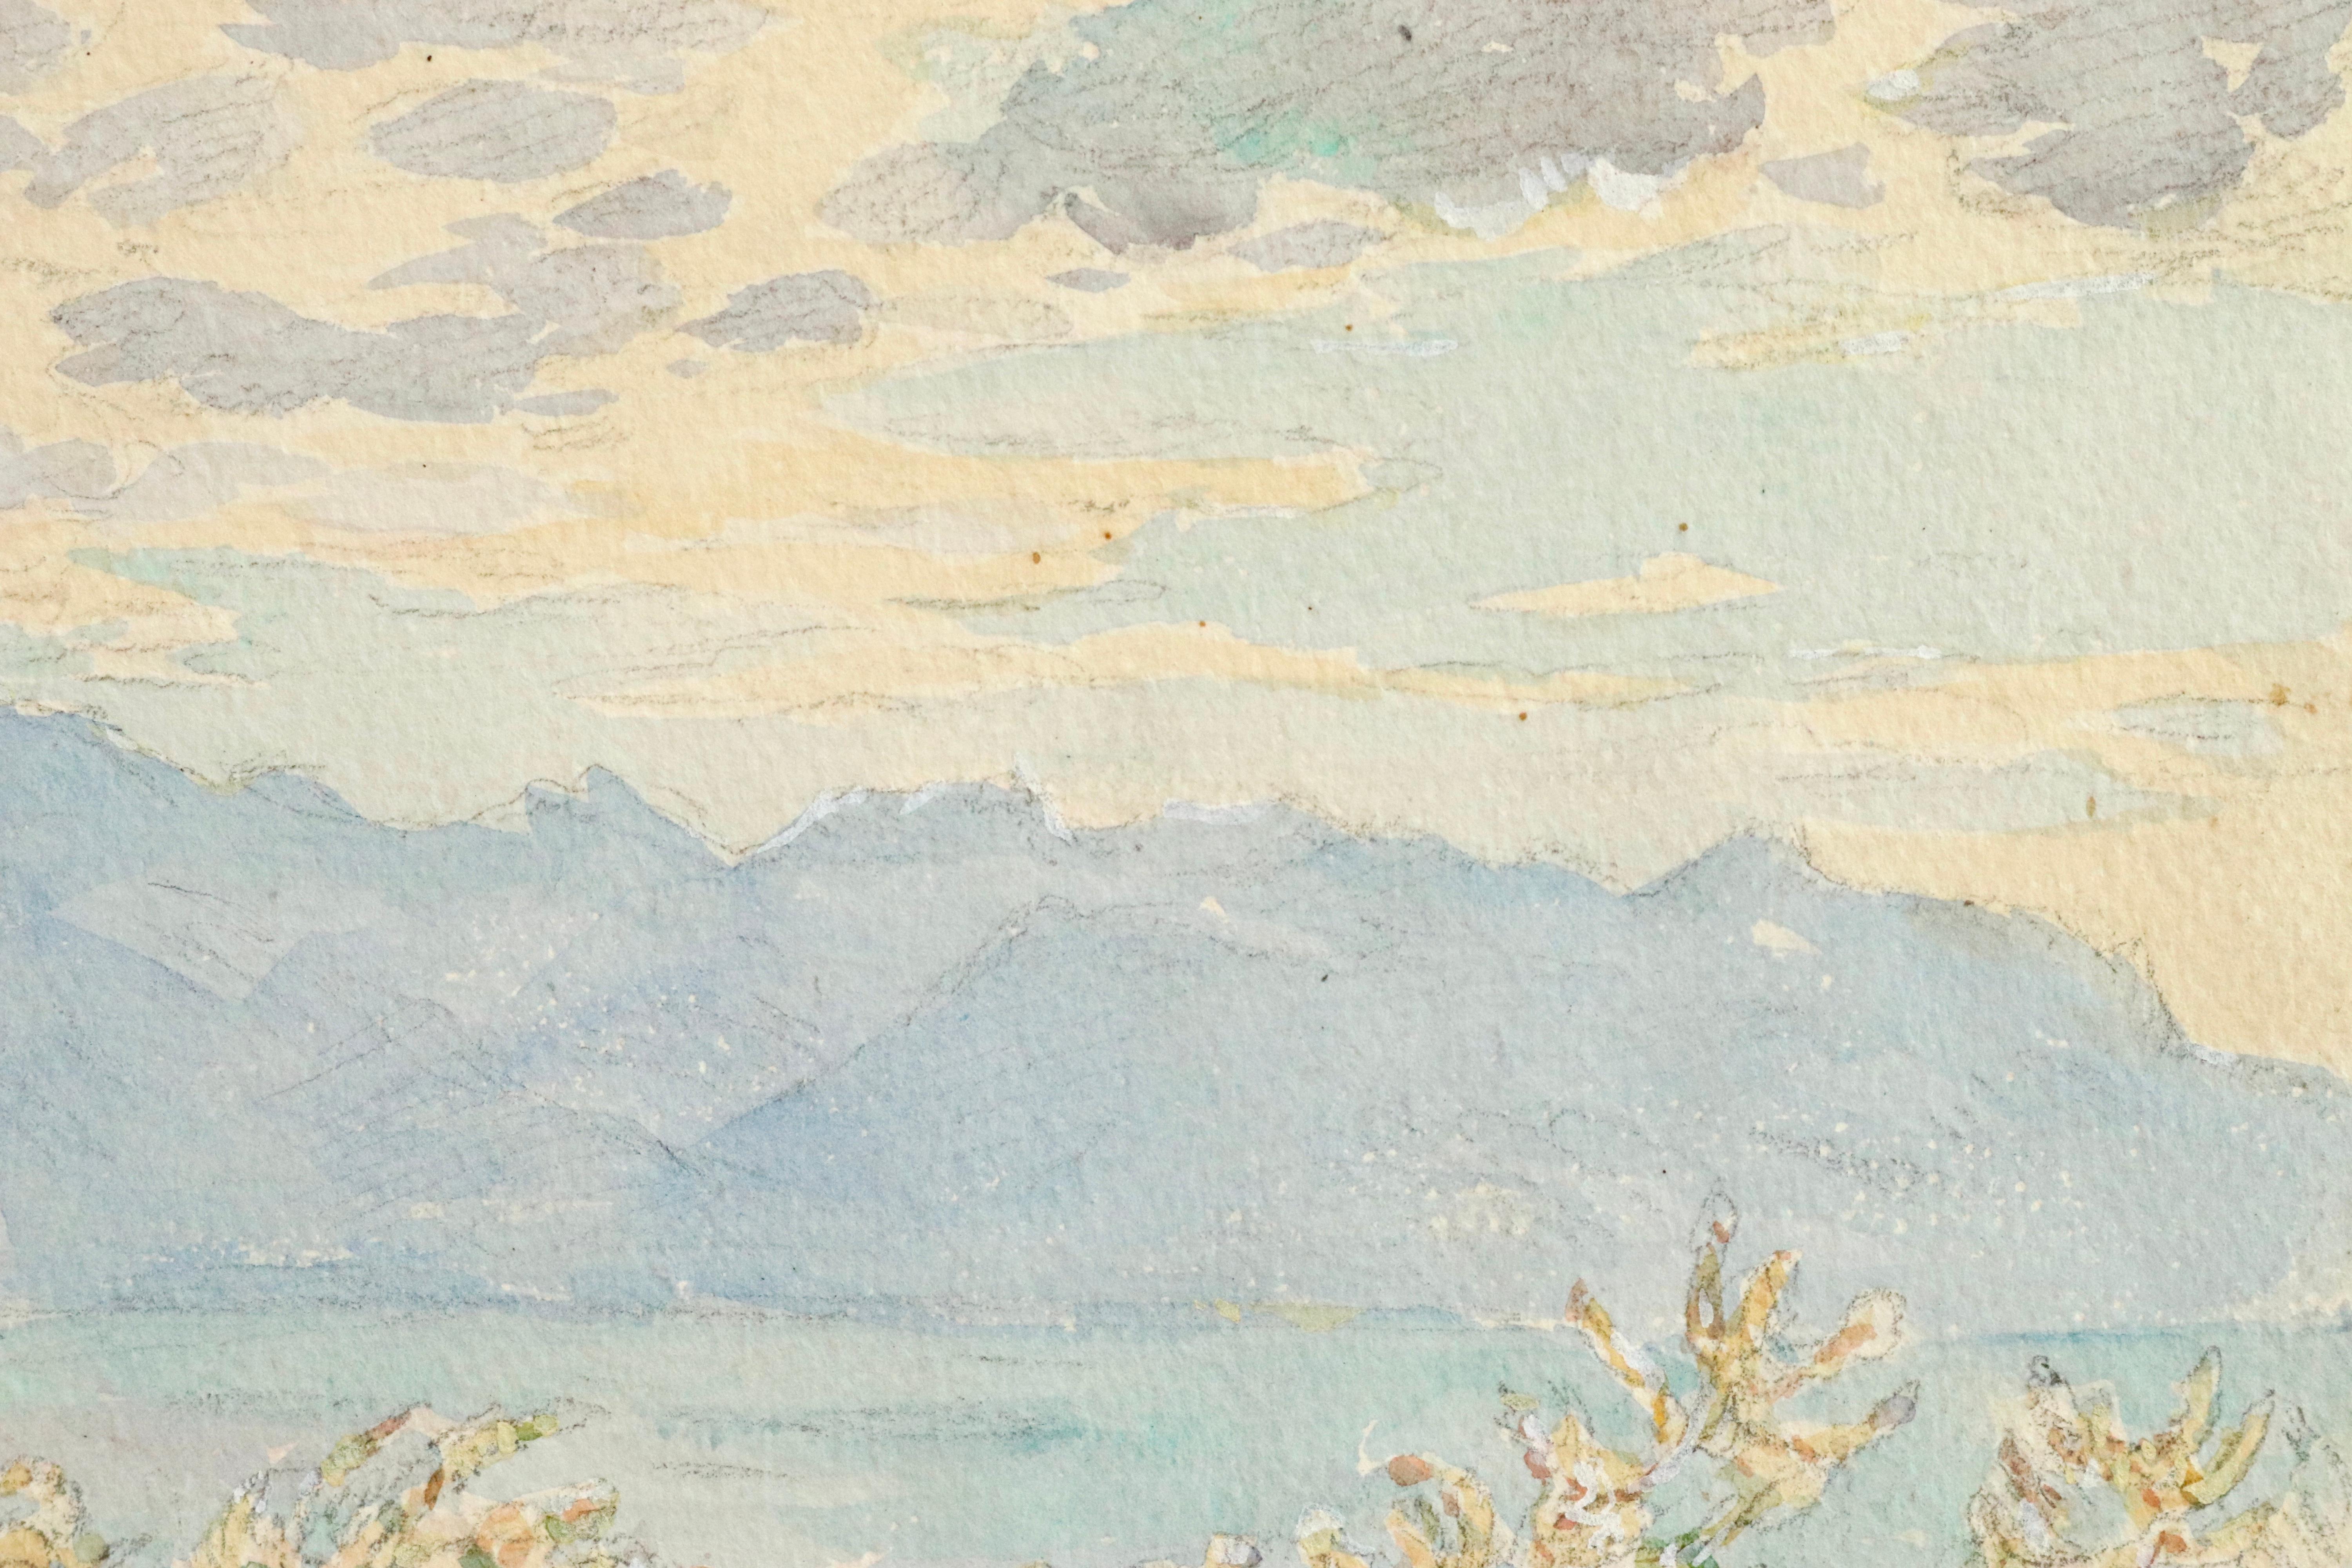 La Vue - Lac Geneva - 19th Century Watercolor, Mountain & Lake Landscape H Duhem - Painting by Henri Duhem